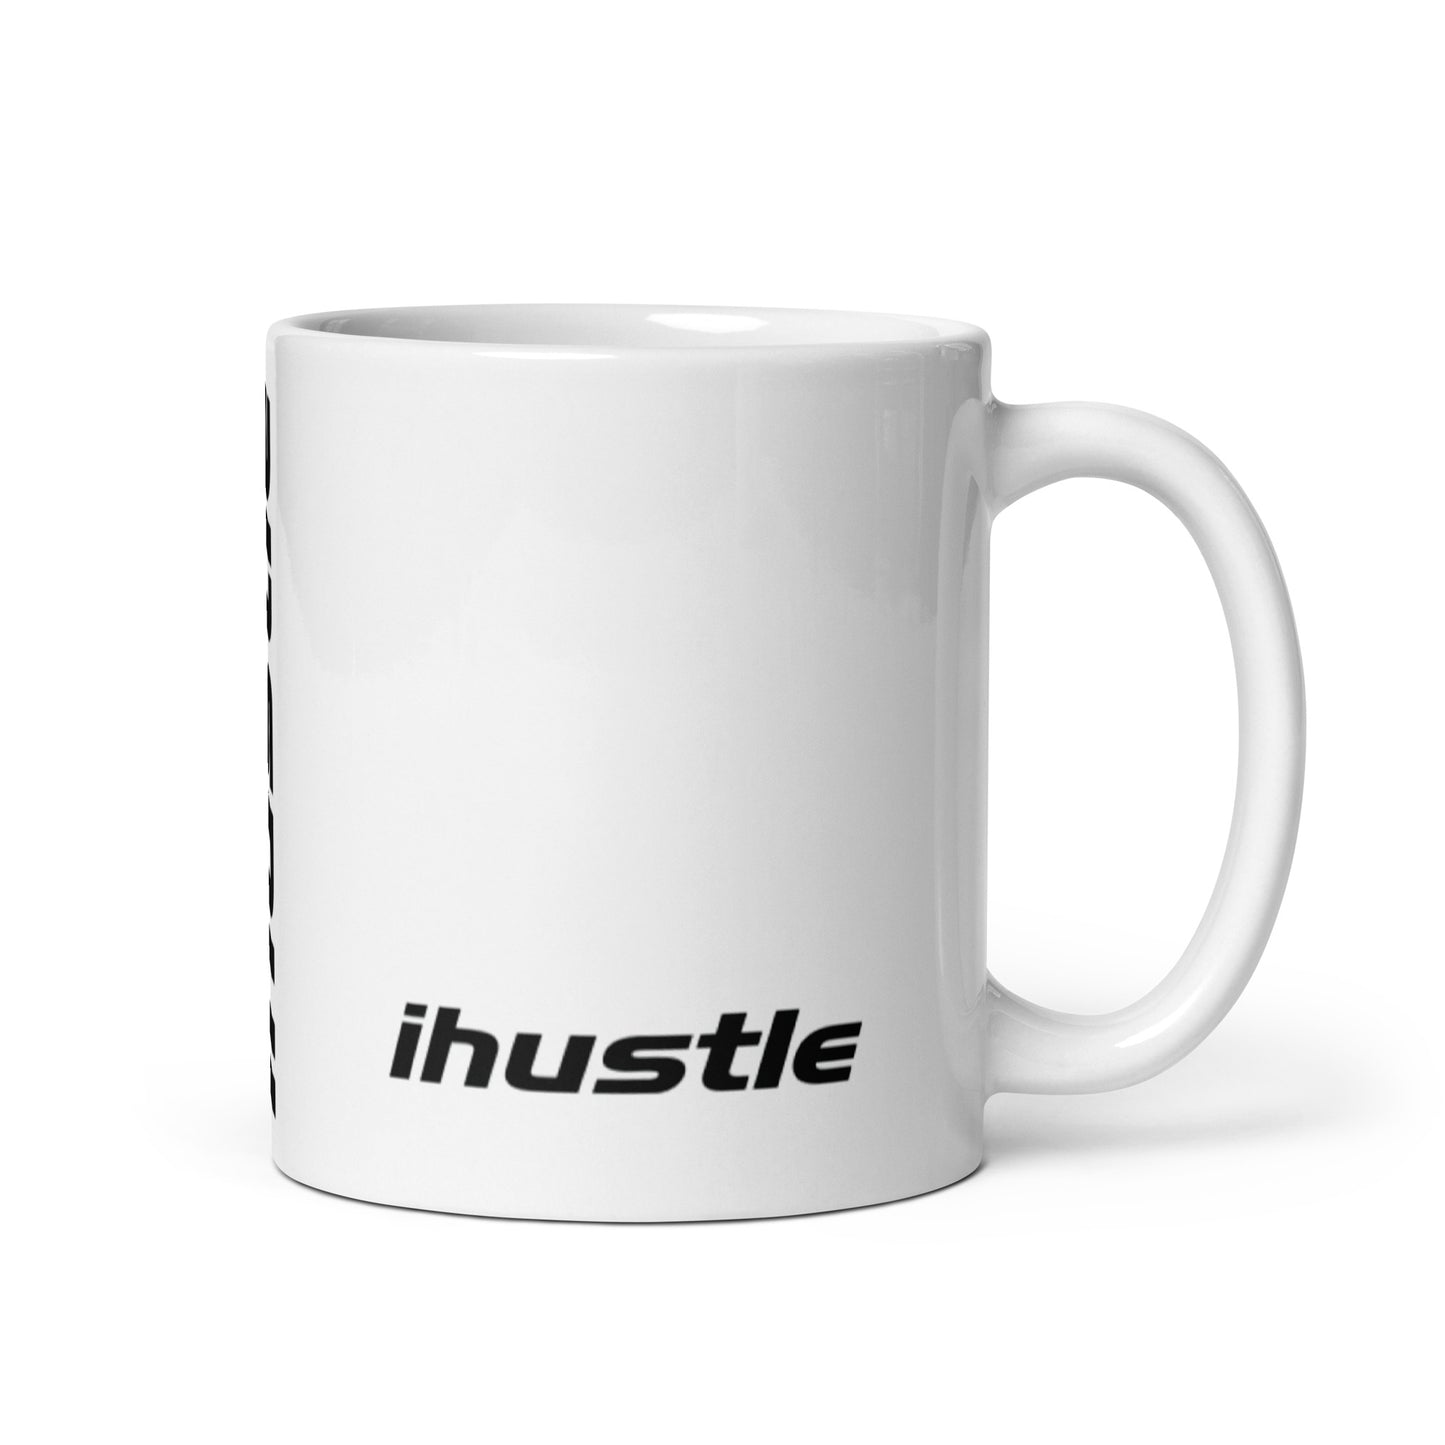 IHUSTLE - White glossy mug